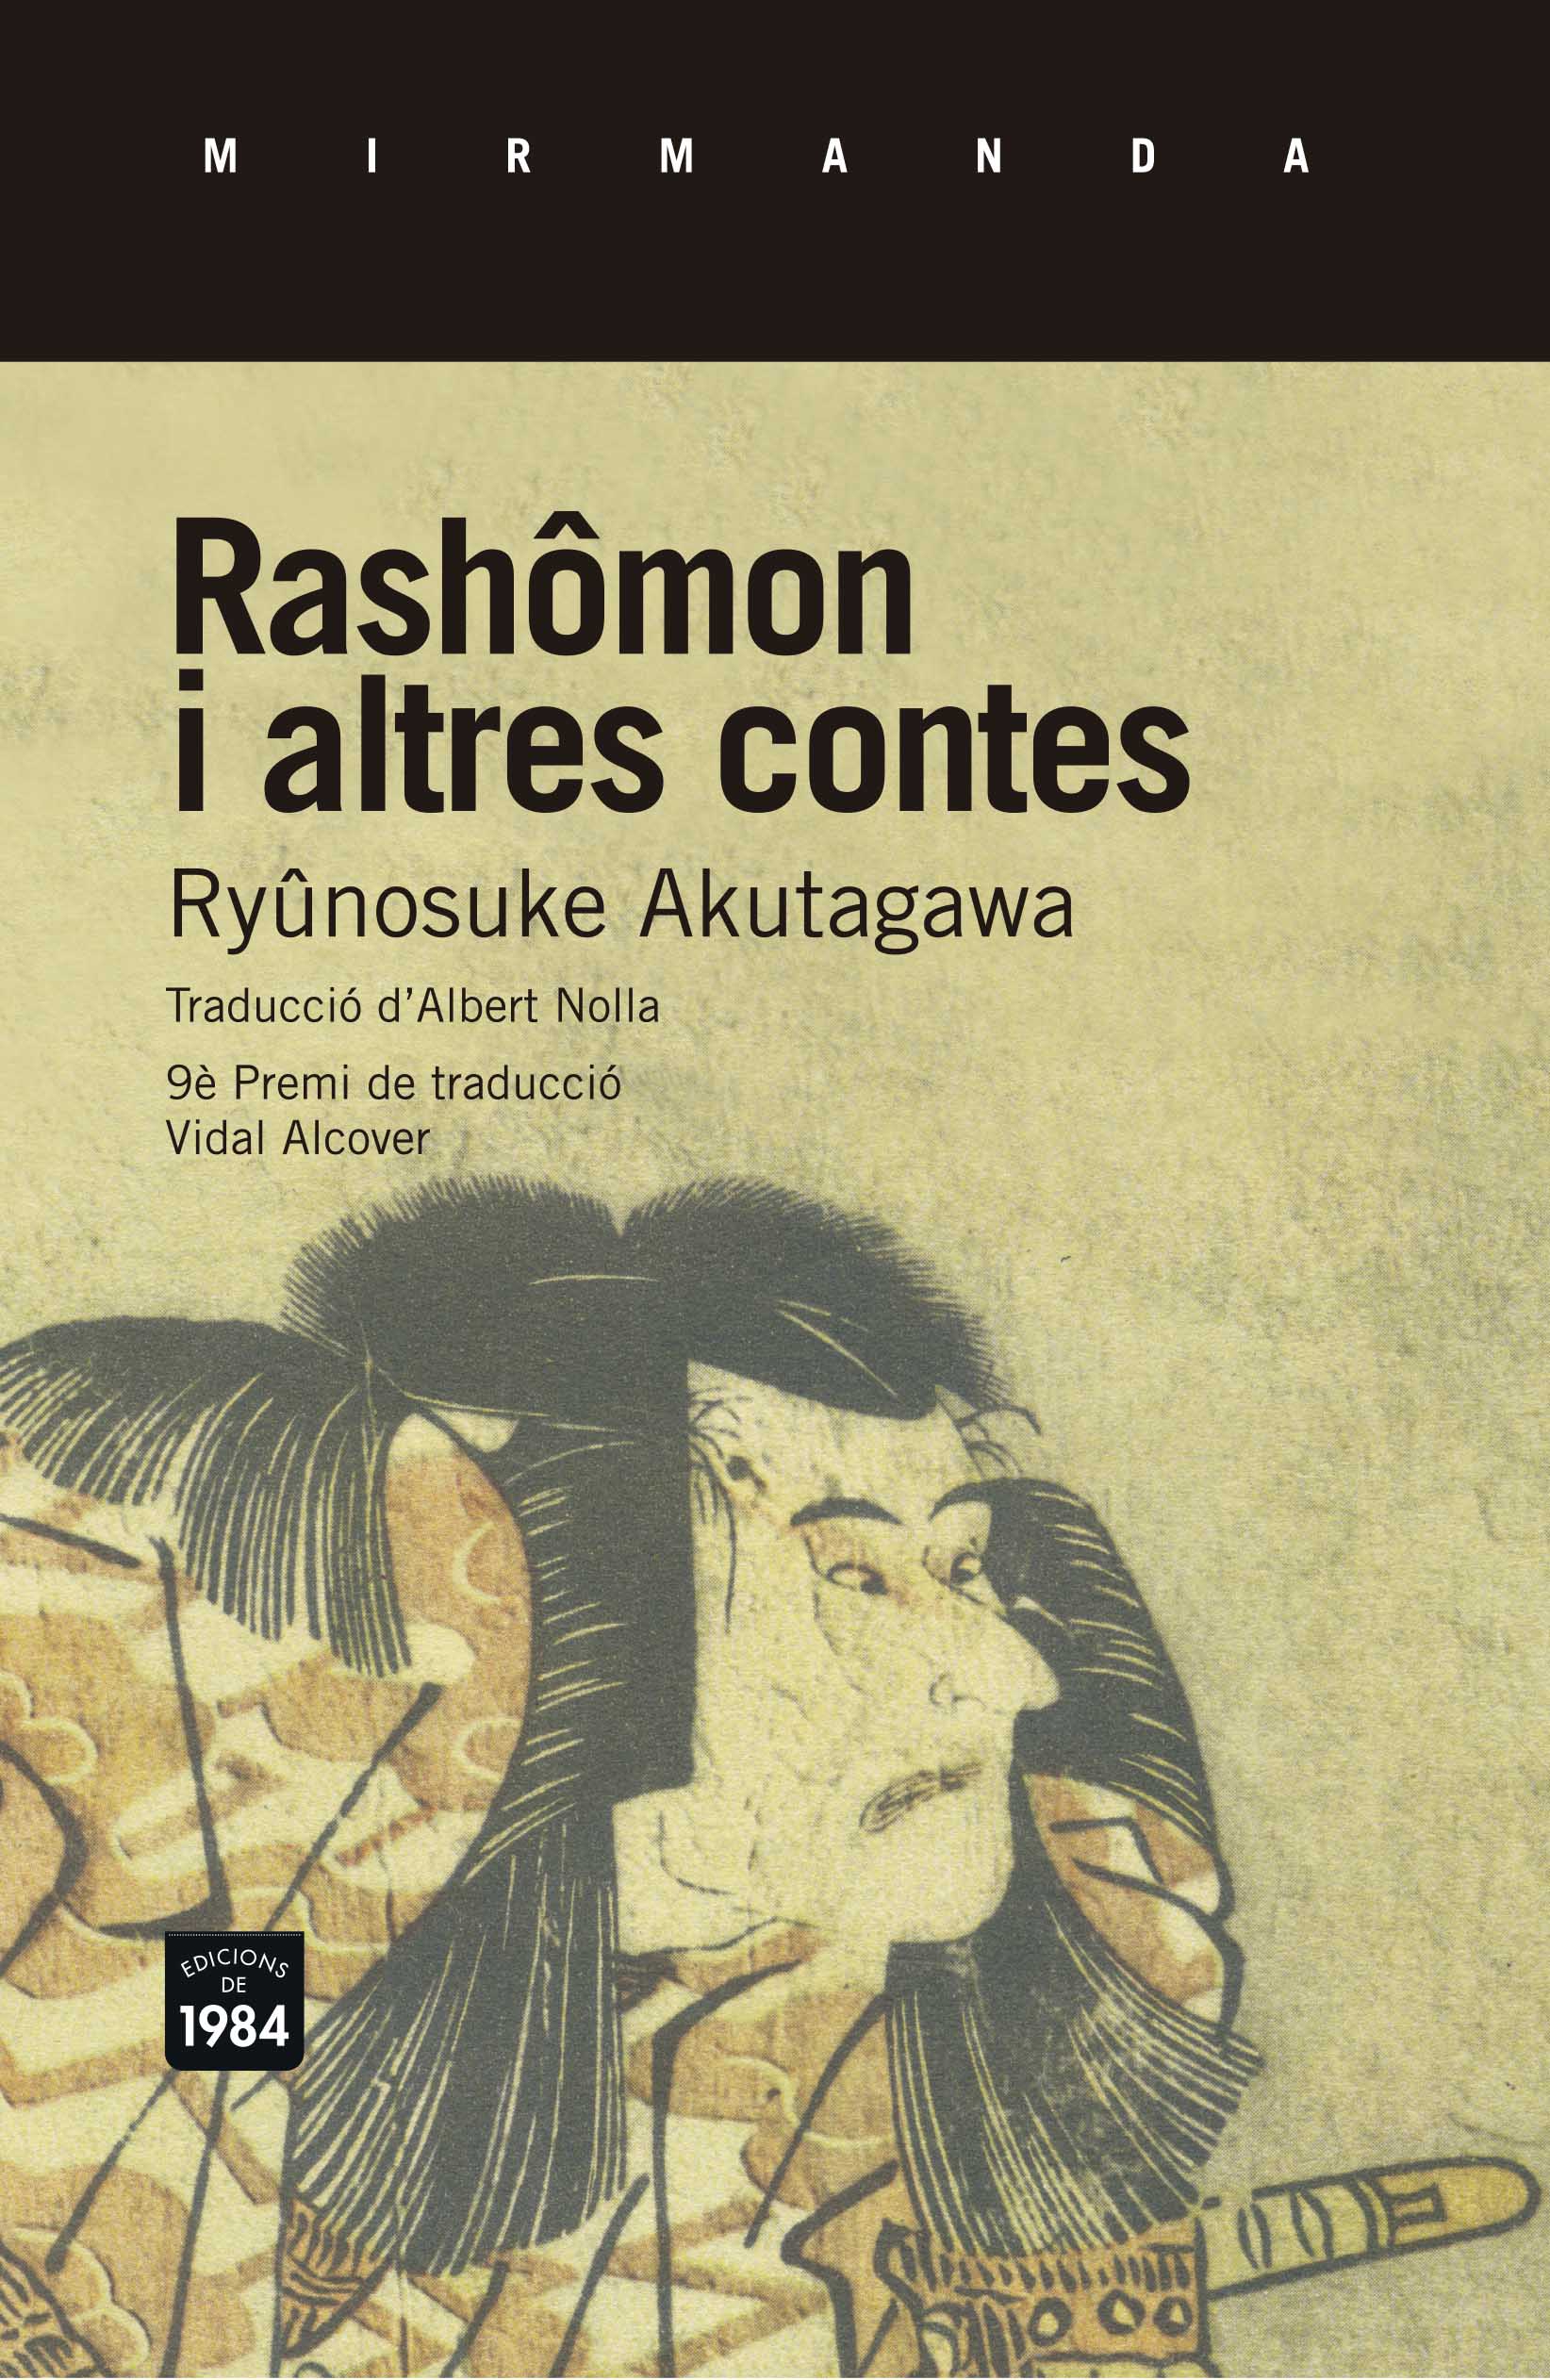 rashomon by ryunosuke akutagawa